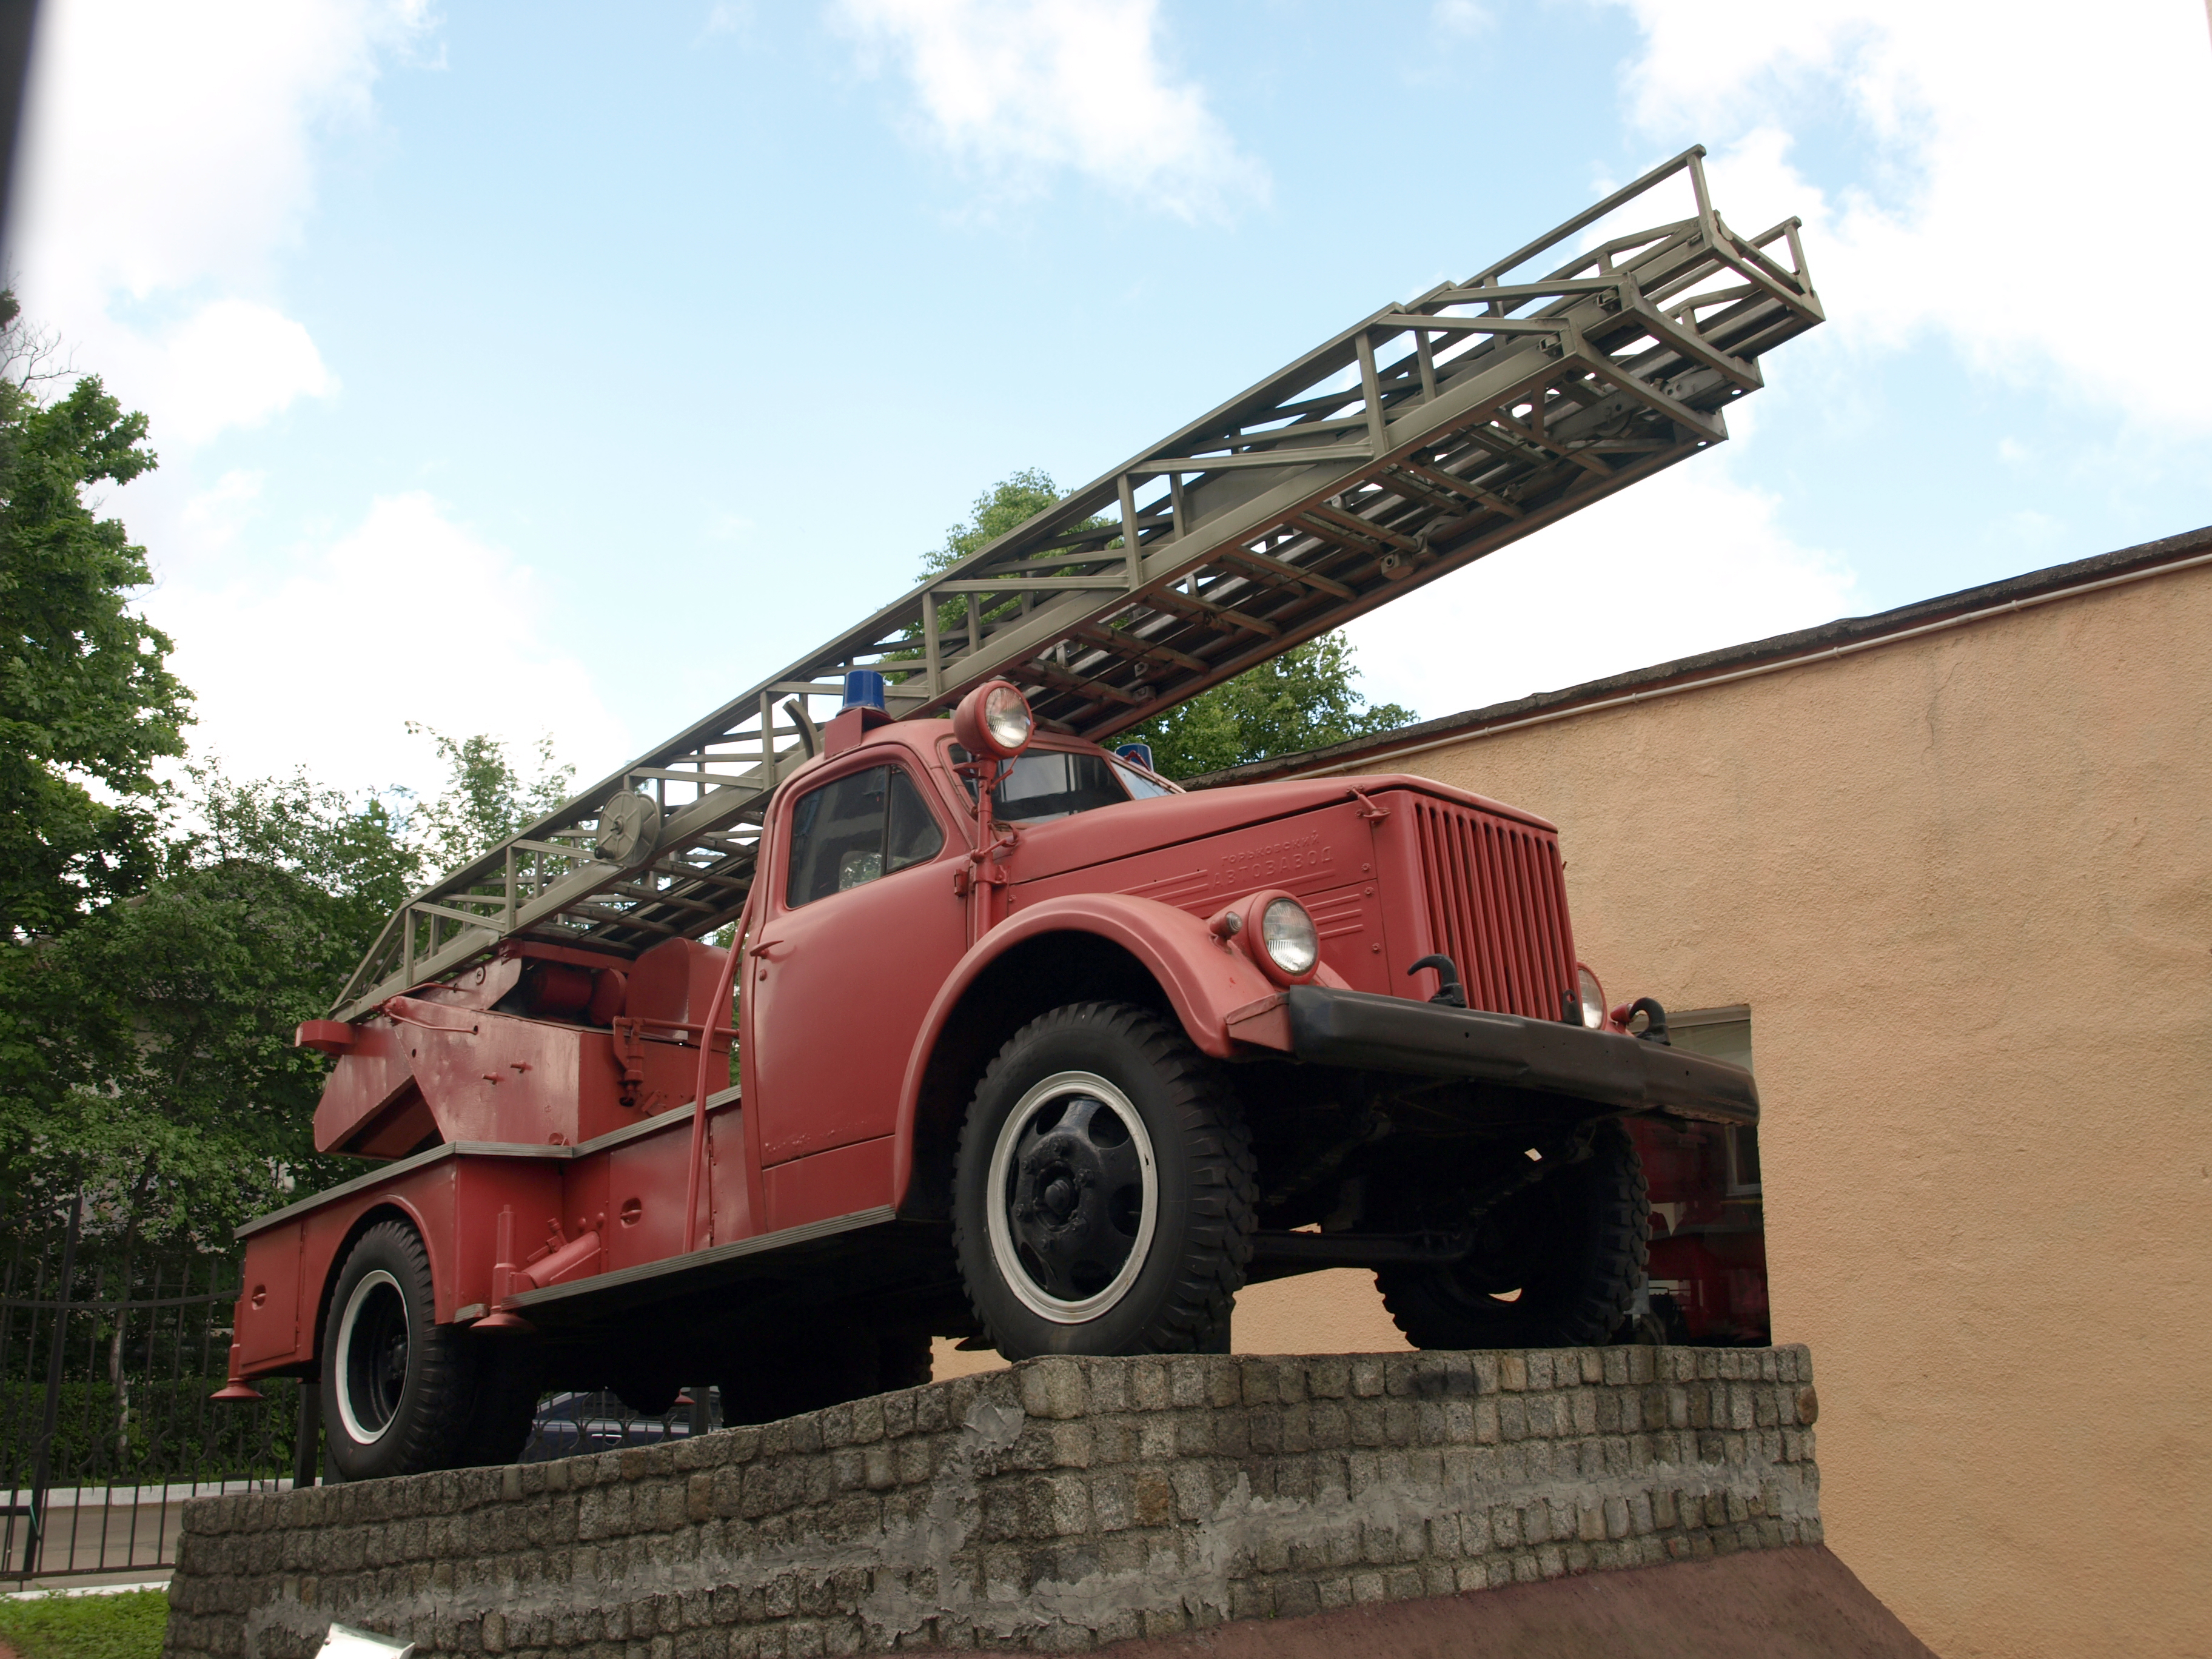 Пожарный автомобиль лестница